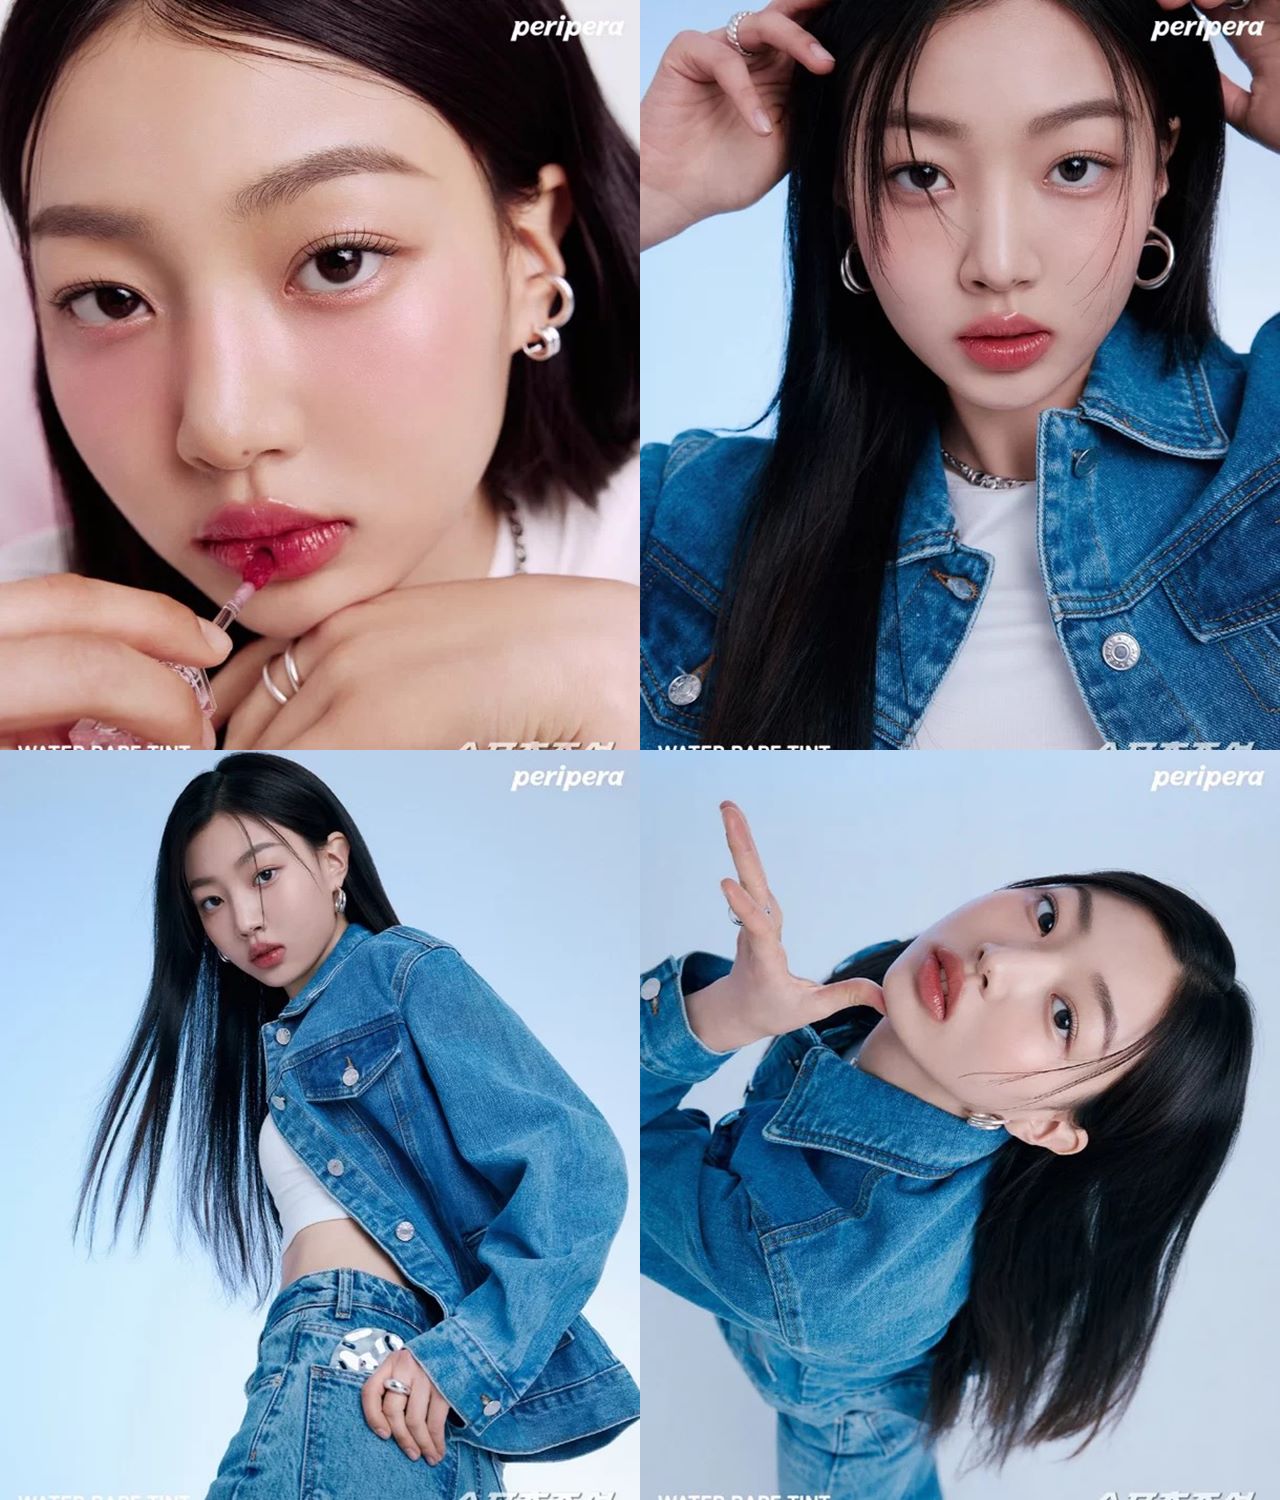 Adik Jihyo Twice Bikin Fans Meleleh Pamer Kecantikan Alami di Iklan Kosmetik